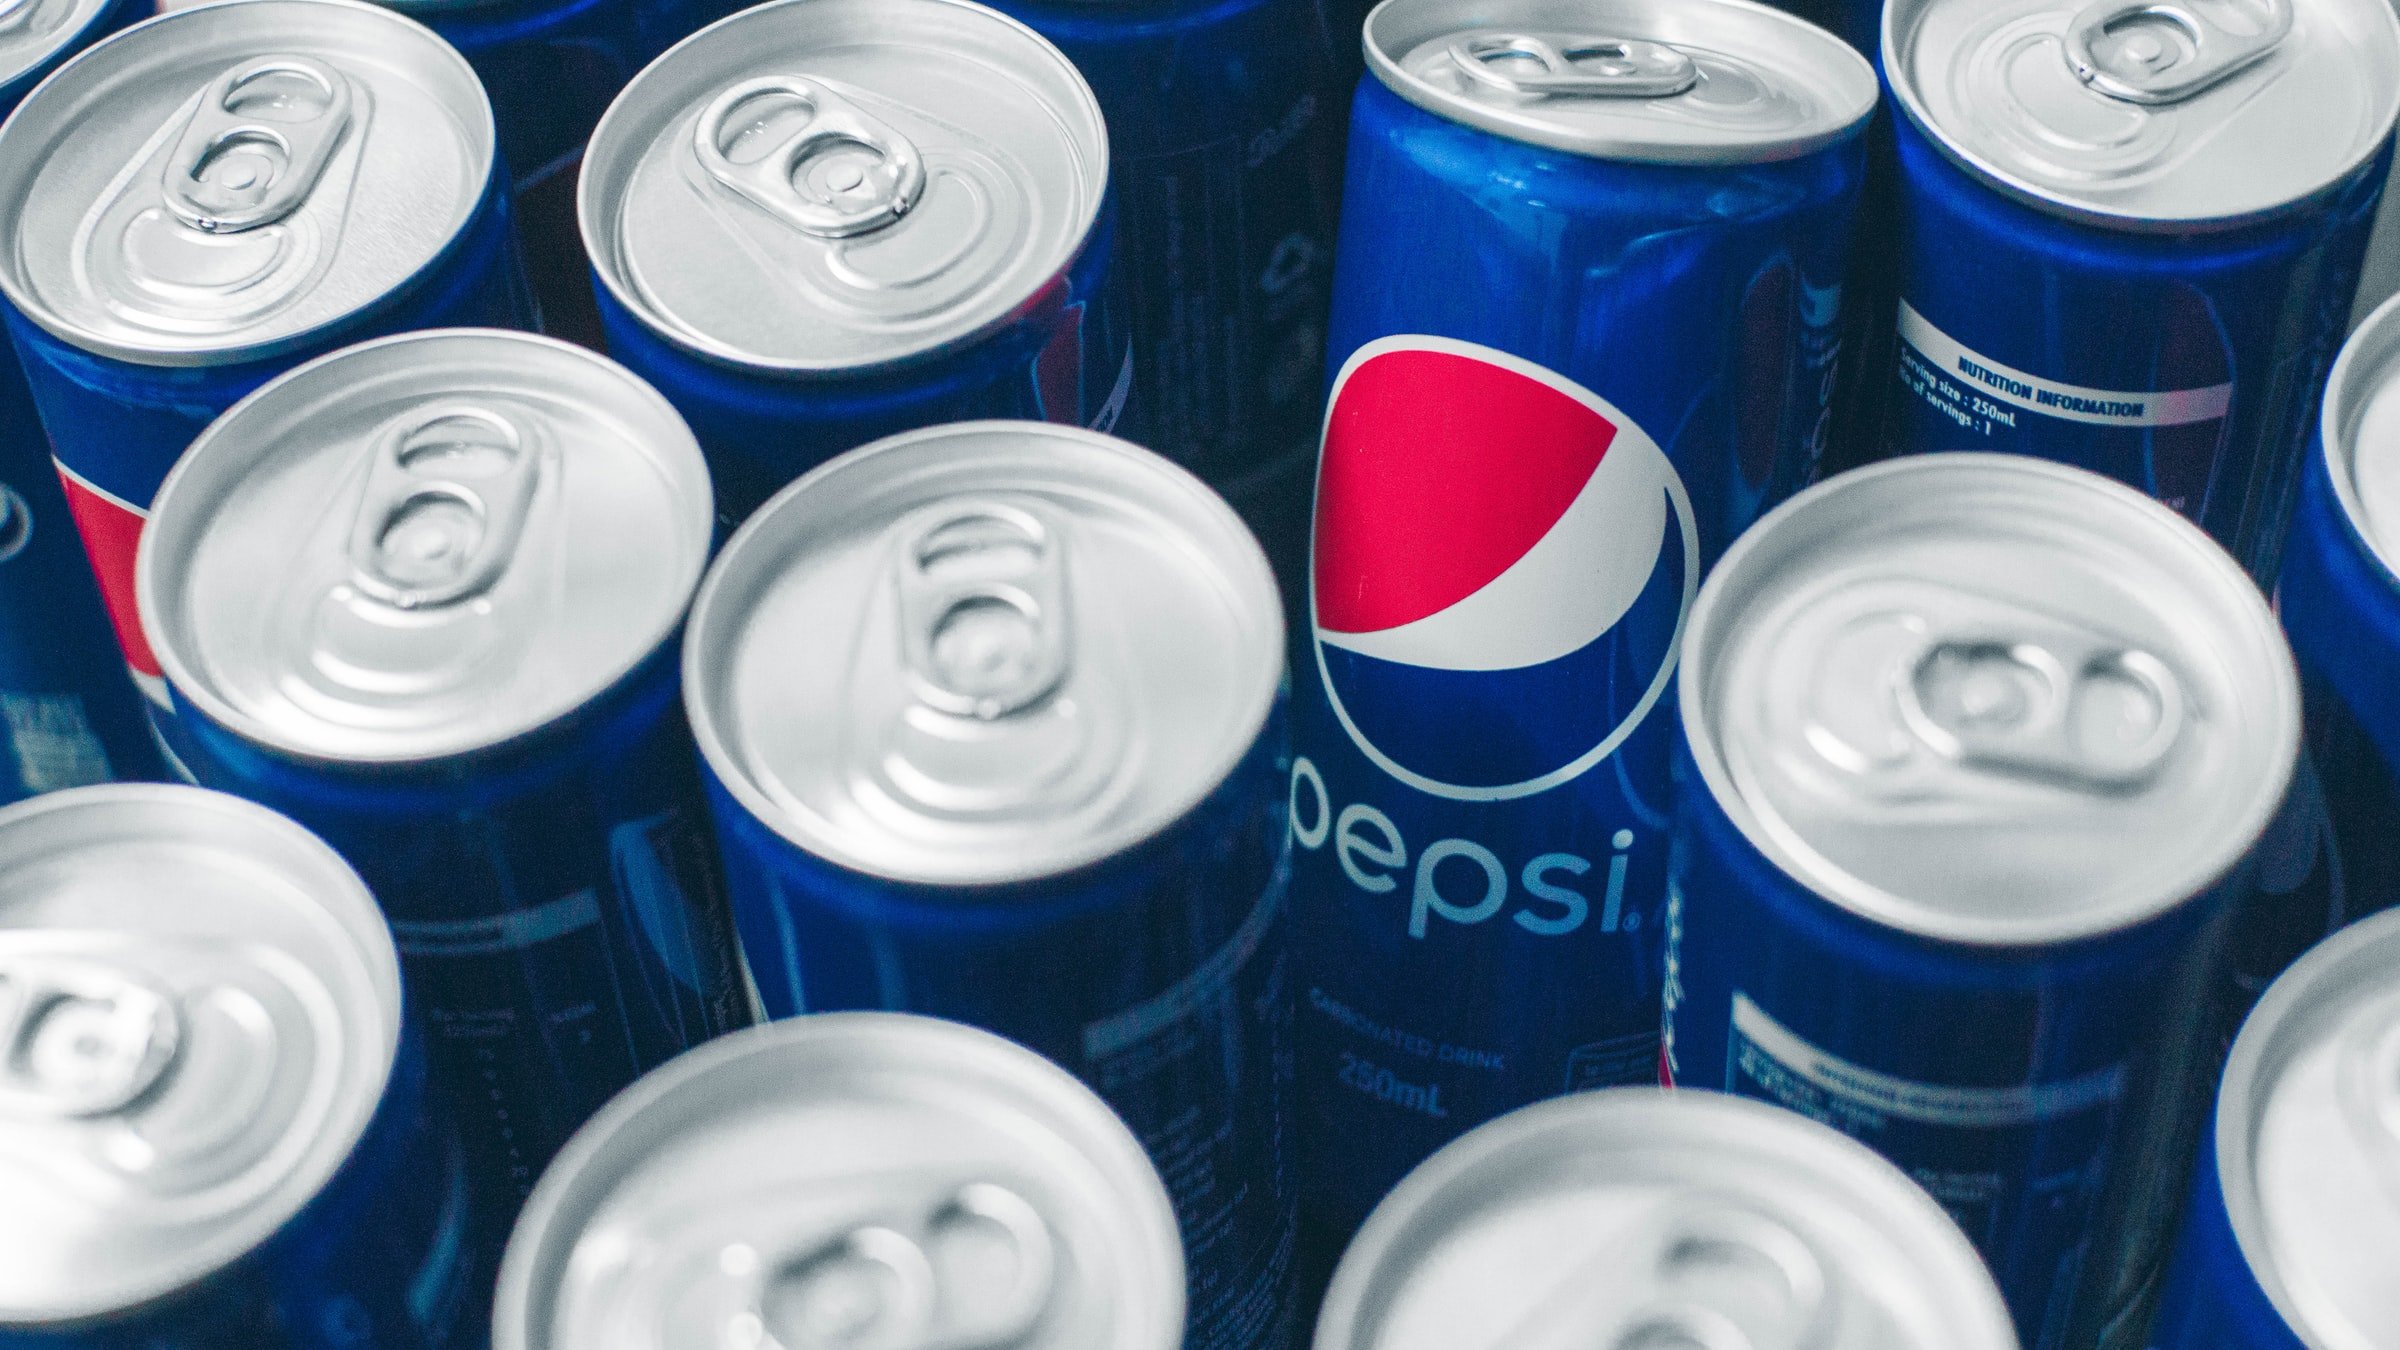 Pepsi cans. | Source: Unsplash